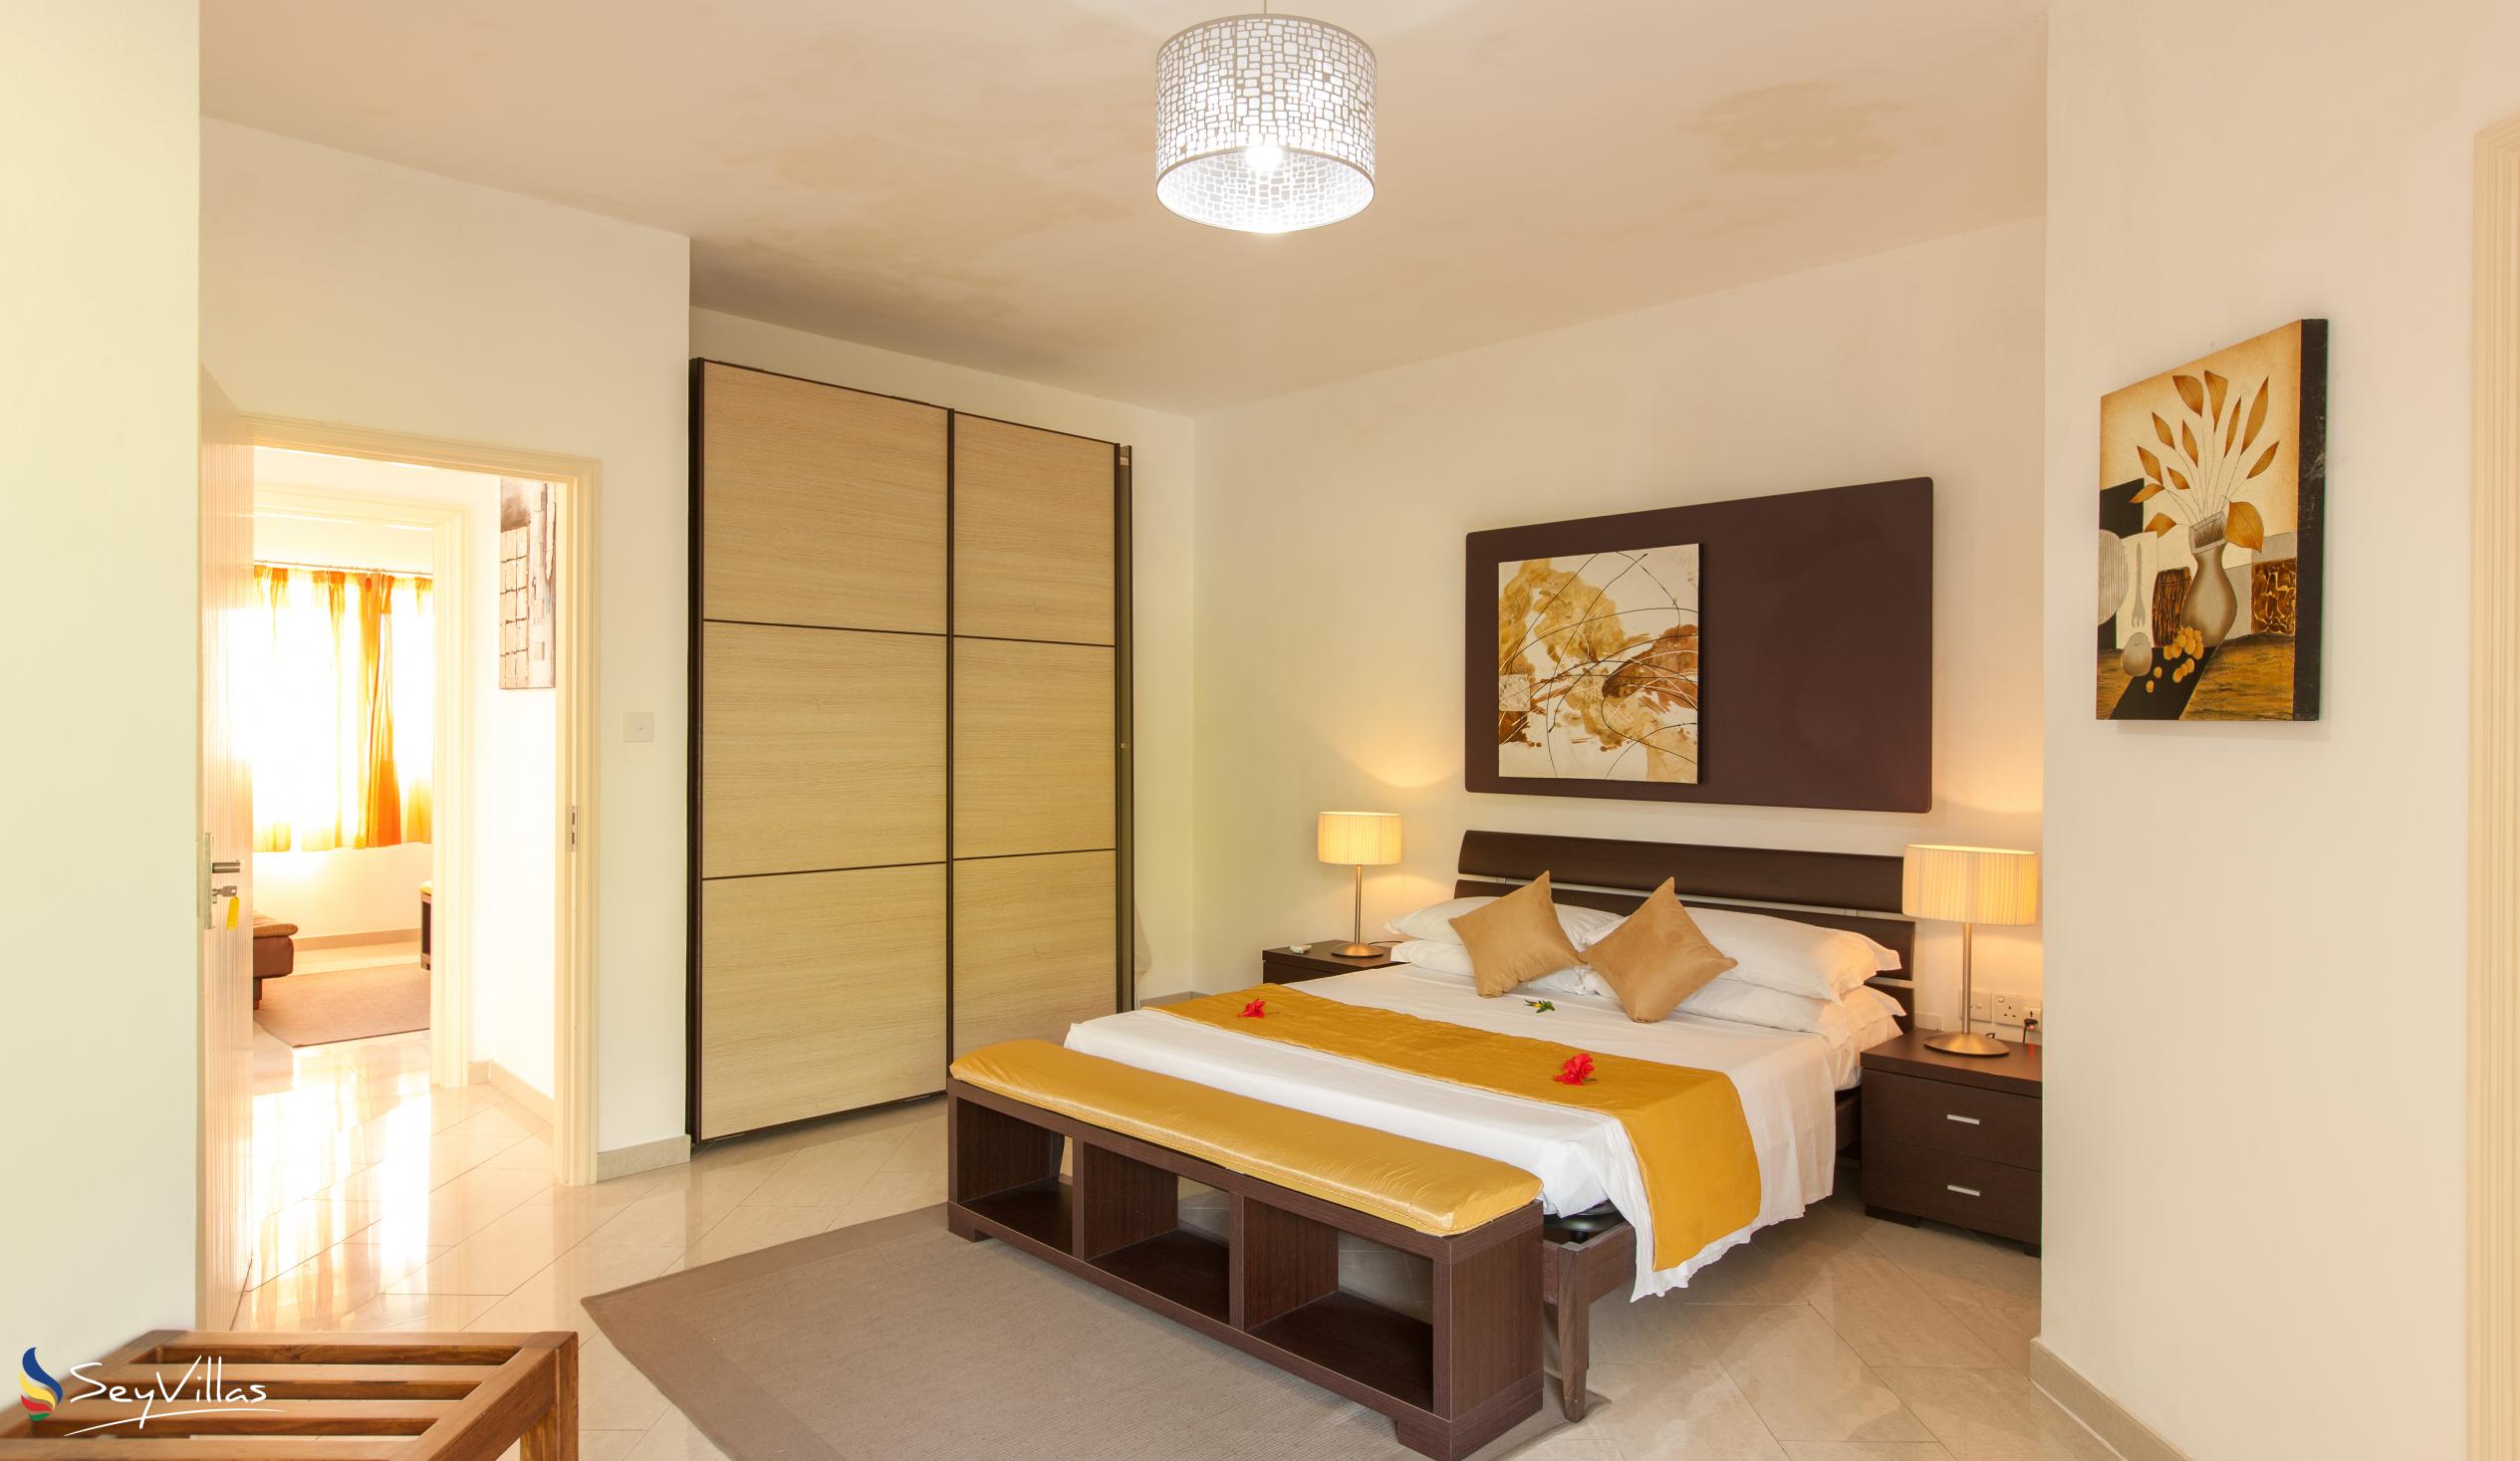 Foto 19: Cote d'Or Apartments - Appartamento familiare - Praslin (Seychelles)